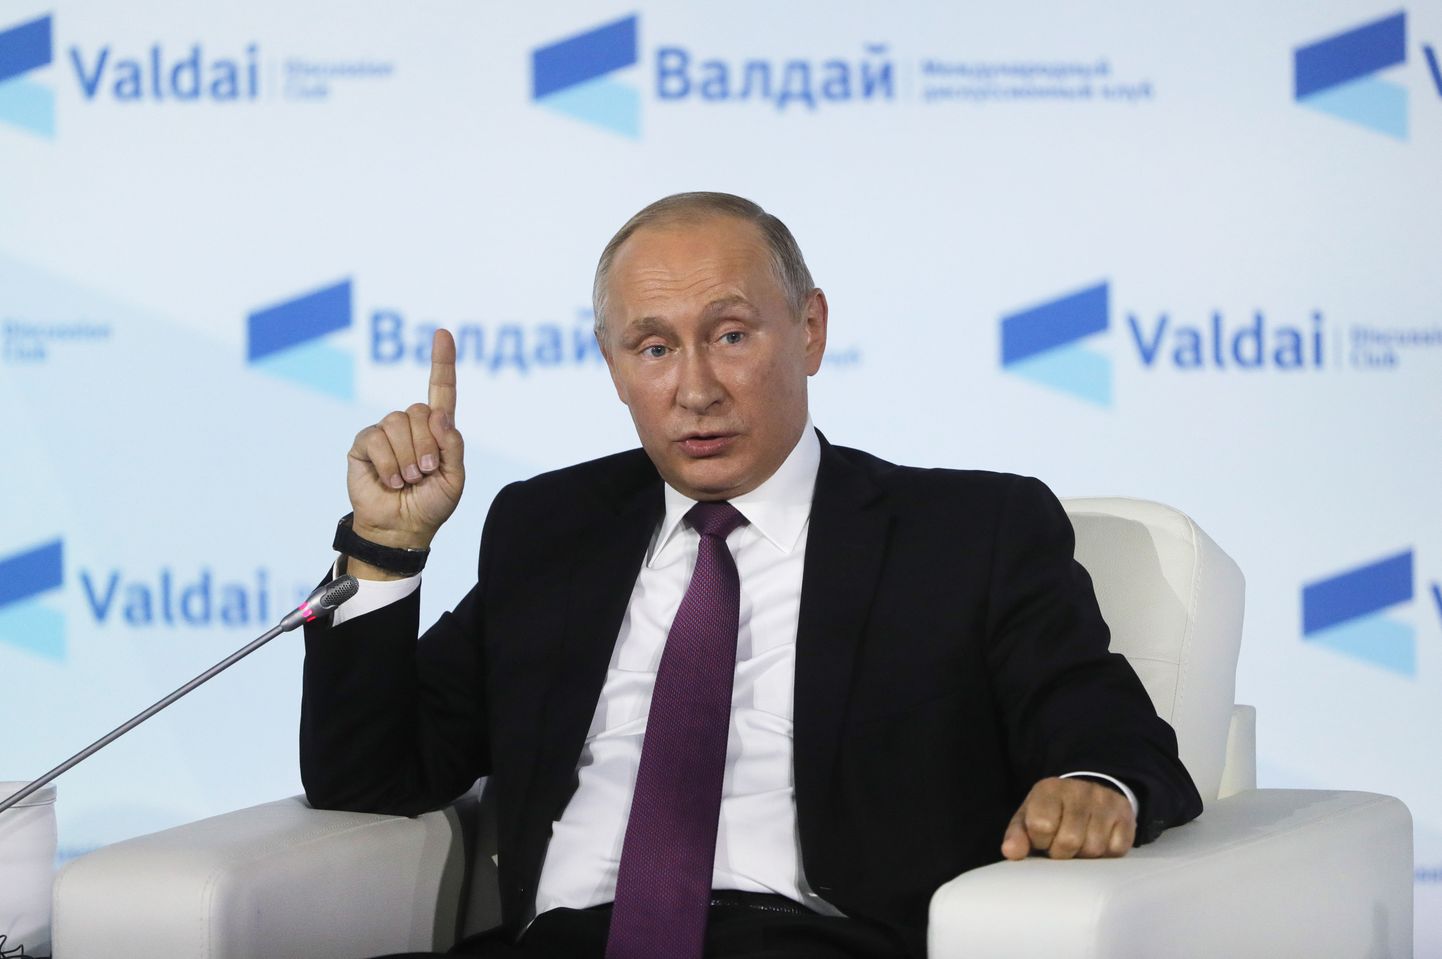 President Vladimir Putin Valdai mõtteklubi kohtumisel Sotšis.